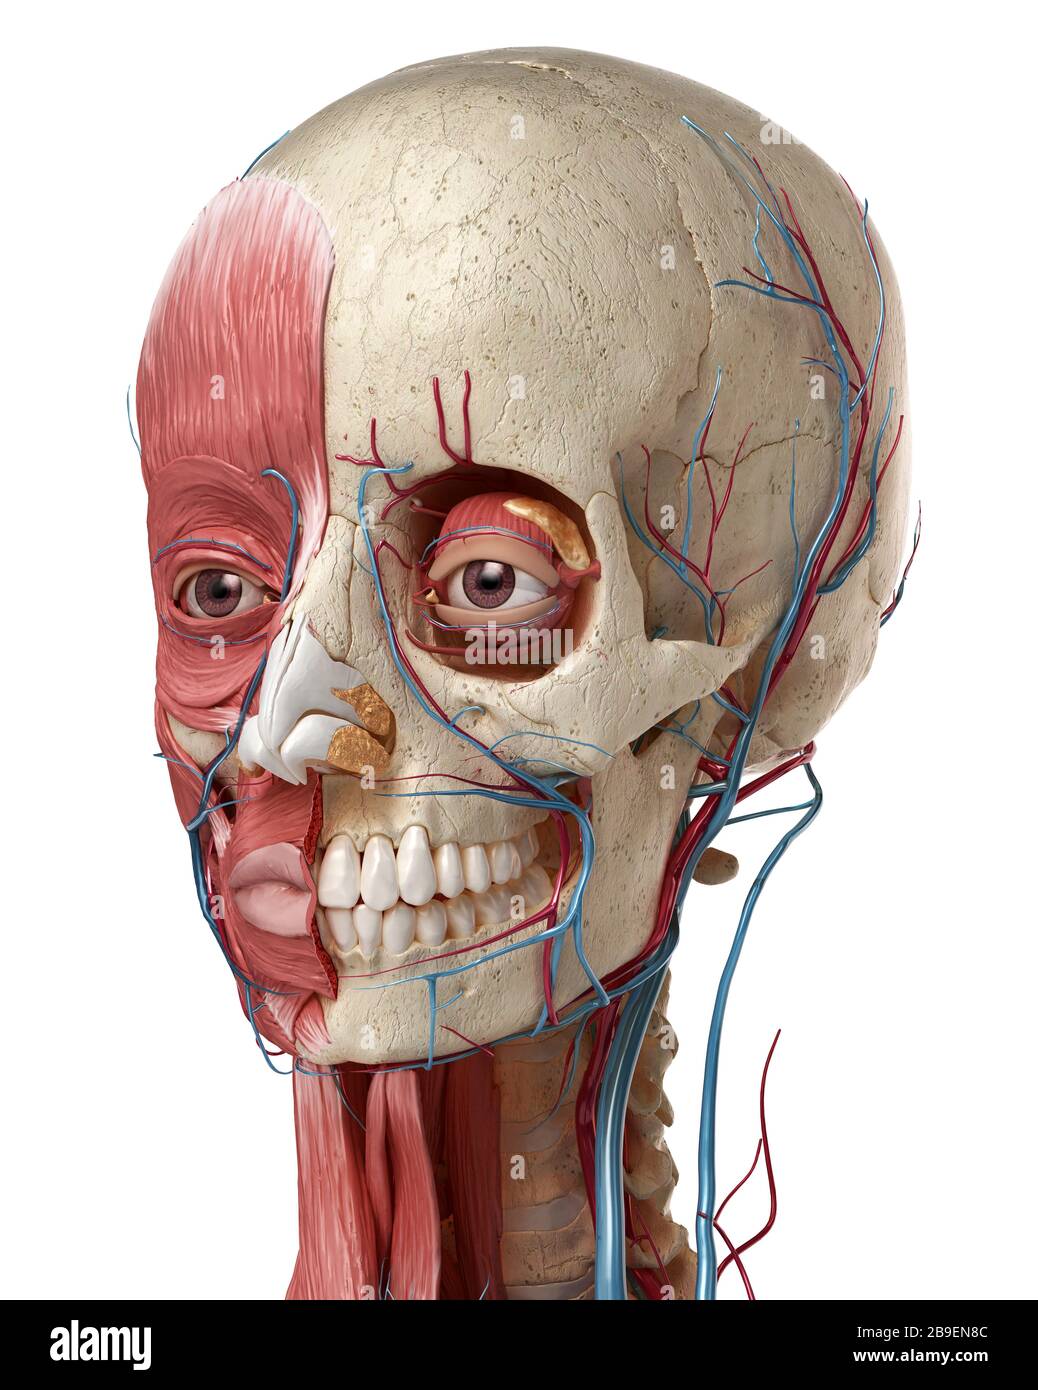 Anatomie humaine de la tête avec le crâne, les ampoules oculaires, les vaisseaux sanguins et les muscles, fond blanc. Banque D'Images